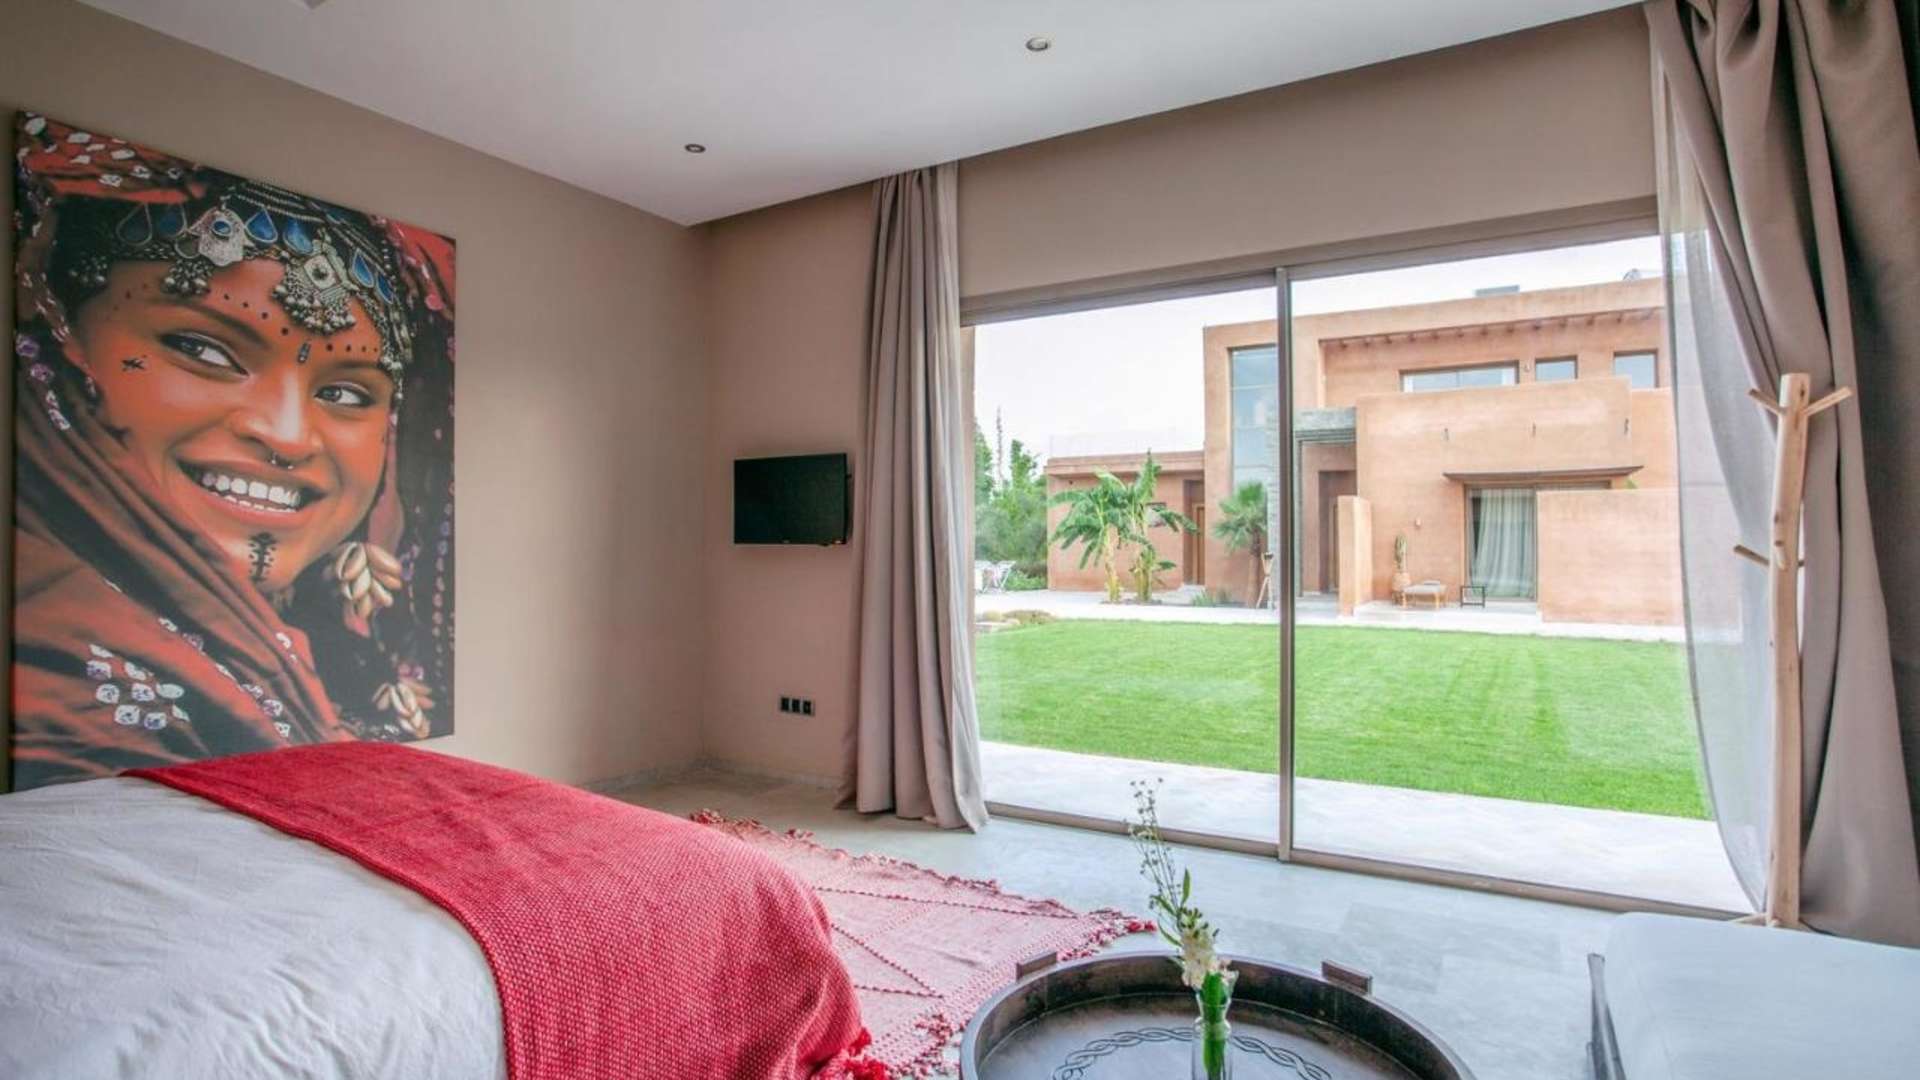 Location de vacances,Villa,Villa de luxe 7 suites avec salle de sport, Hammam, bar et spa,Marrakech,Route de Fès